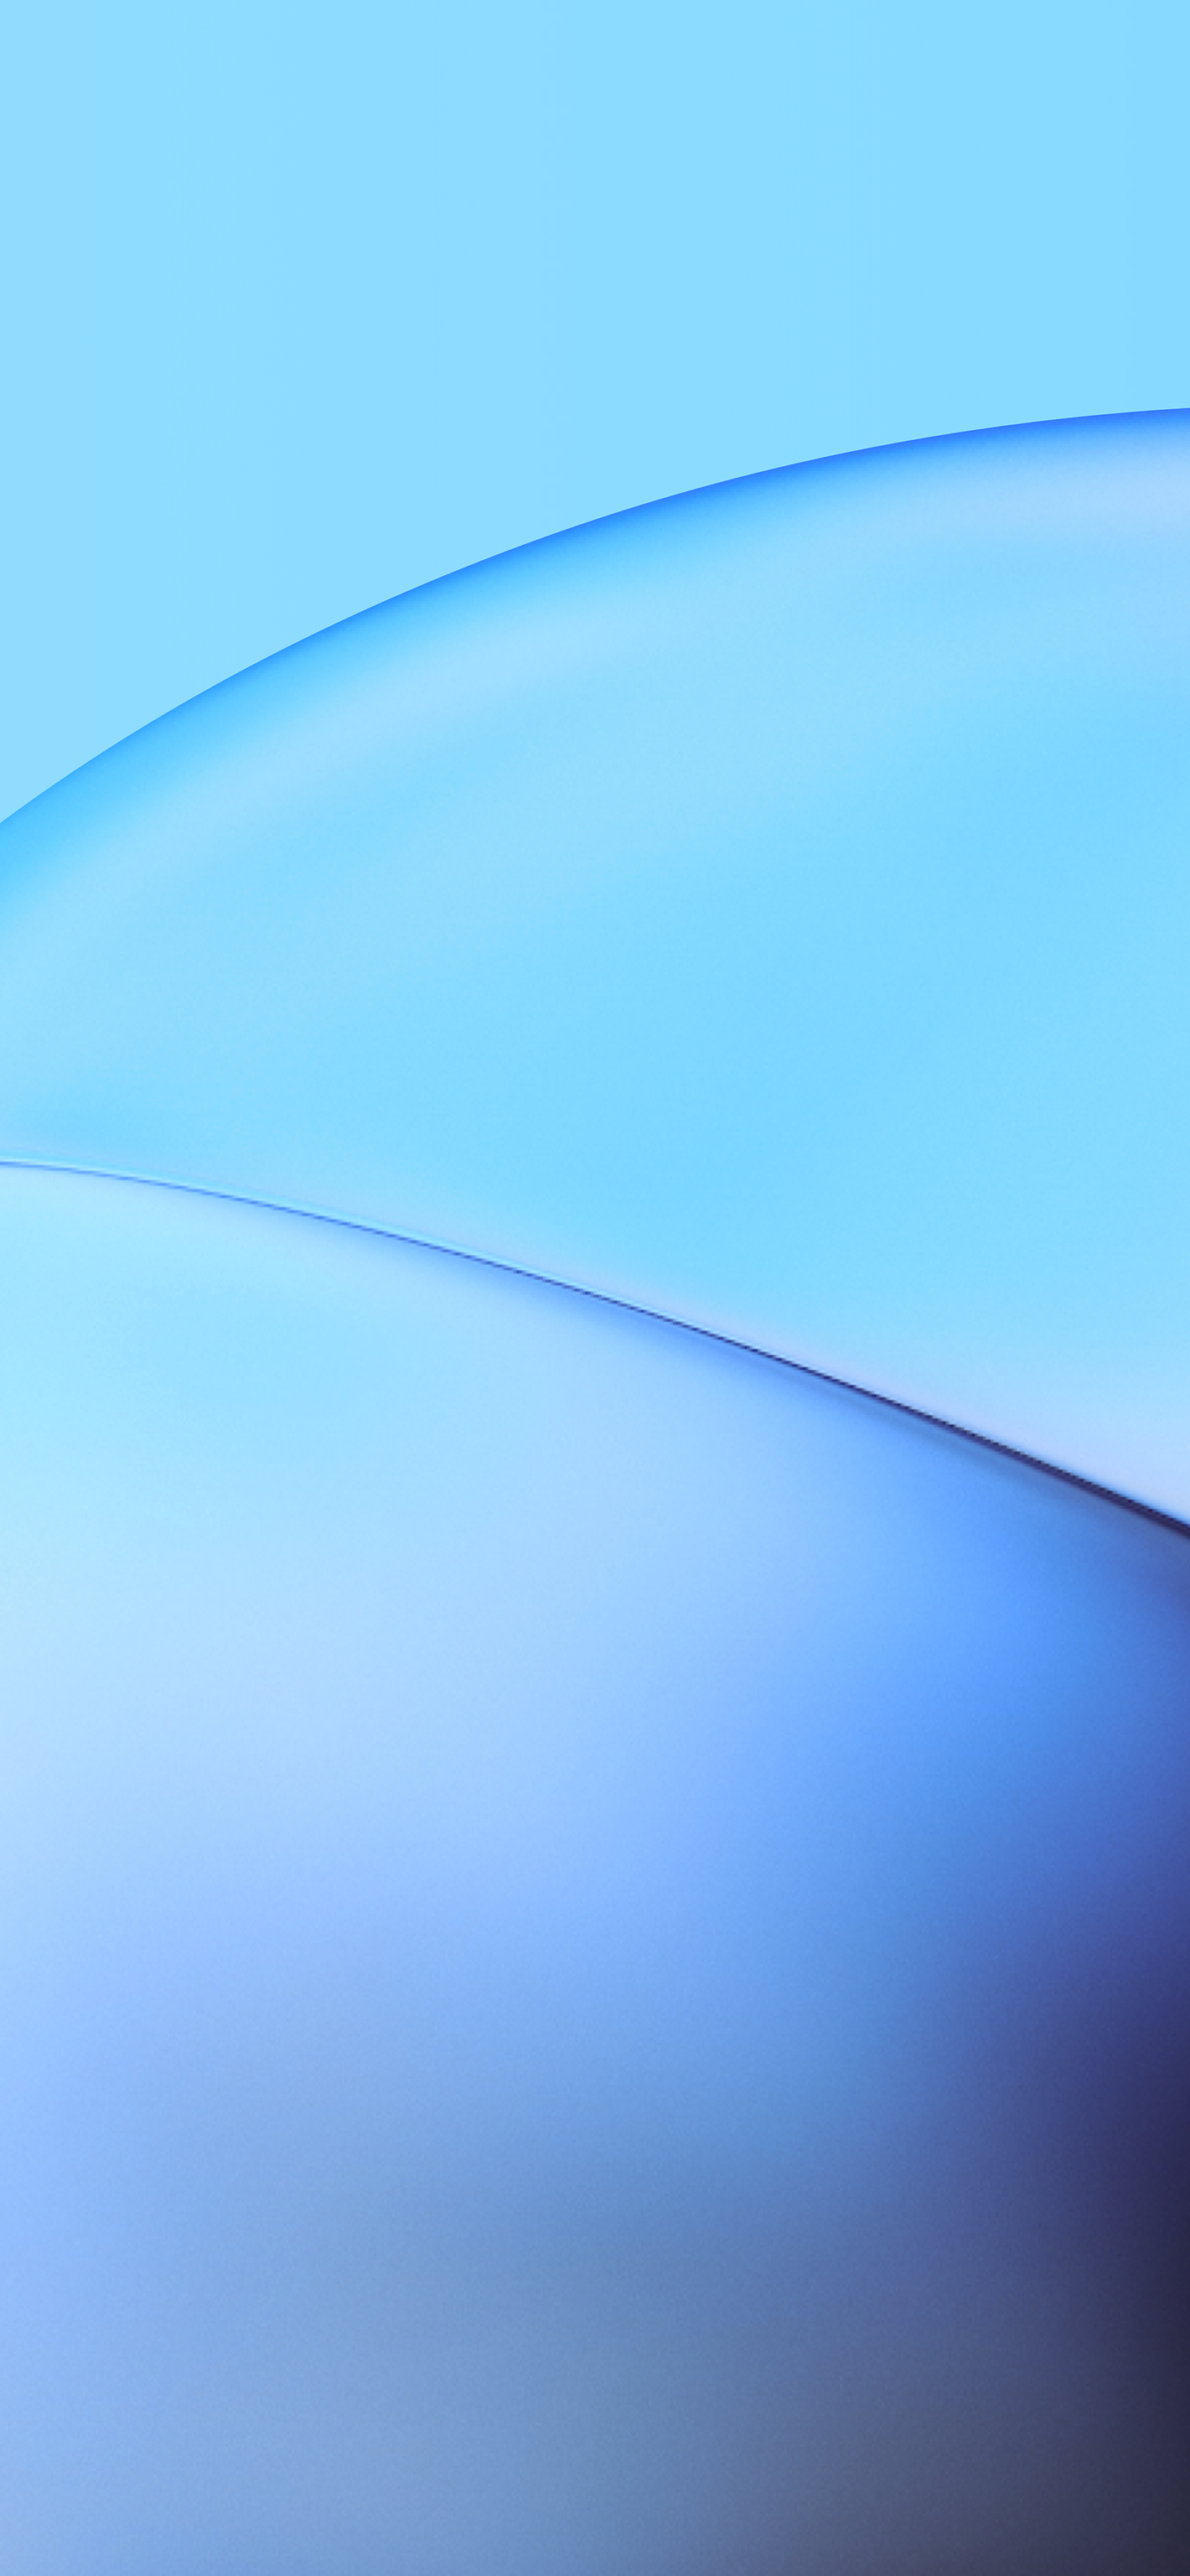 900 Light Blue Background Images Download HD Backgrounds on Unsplash